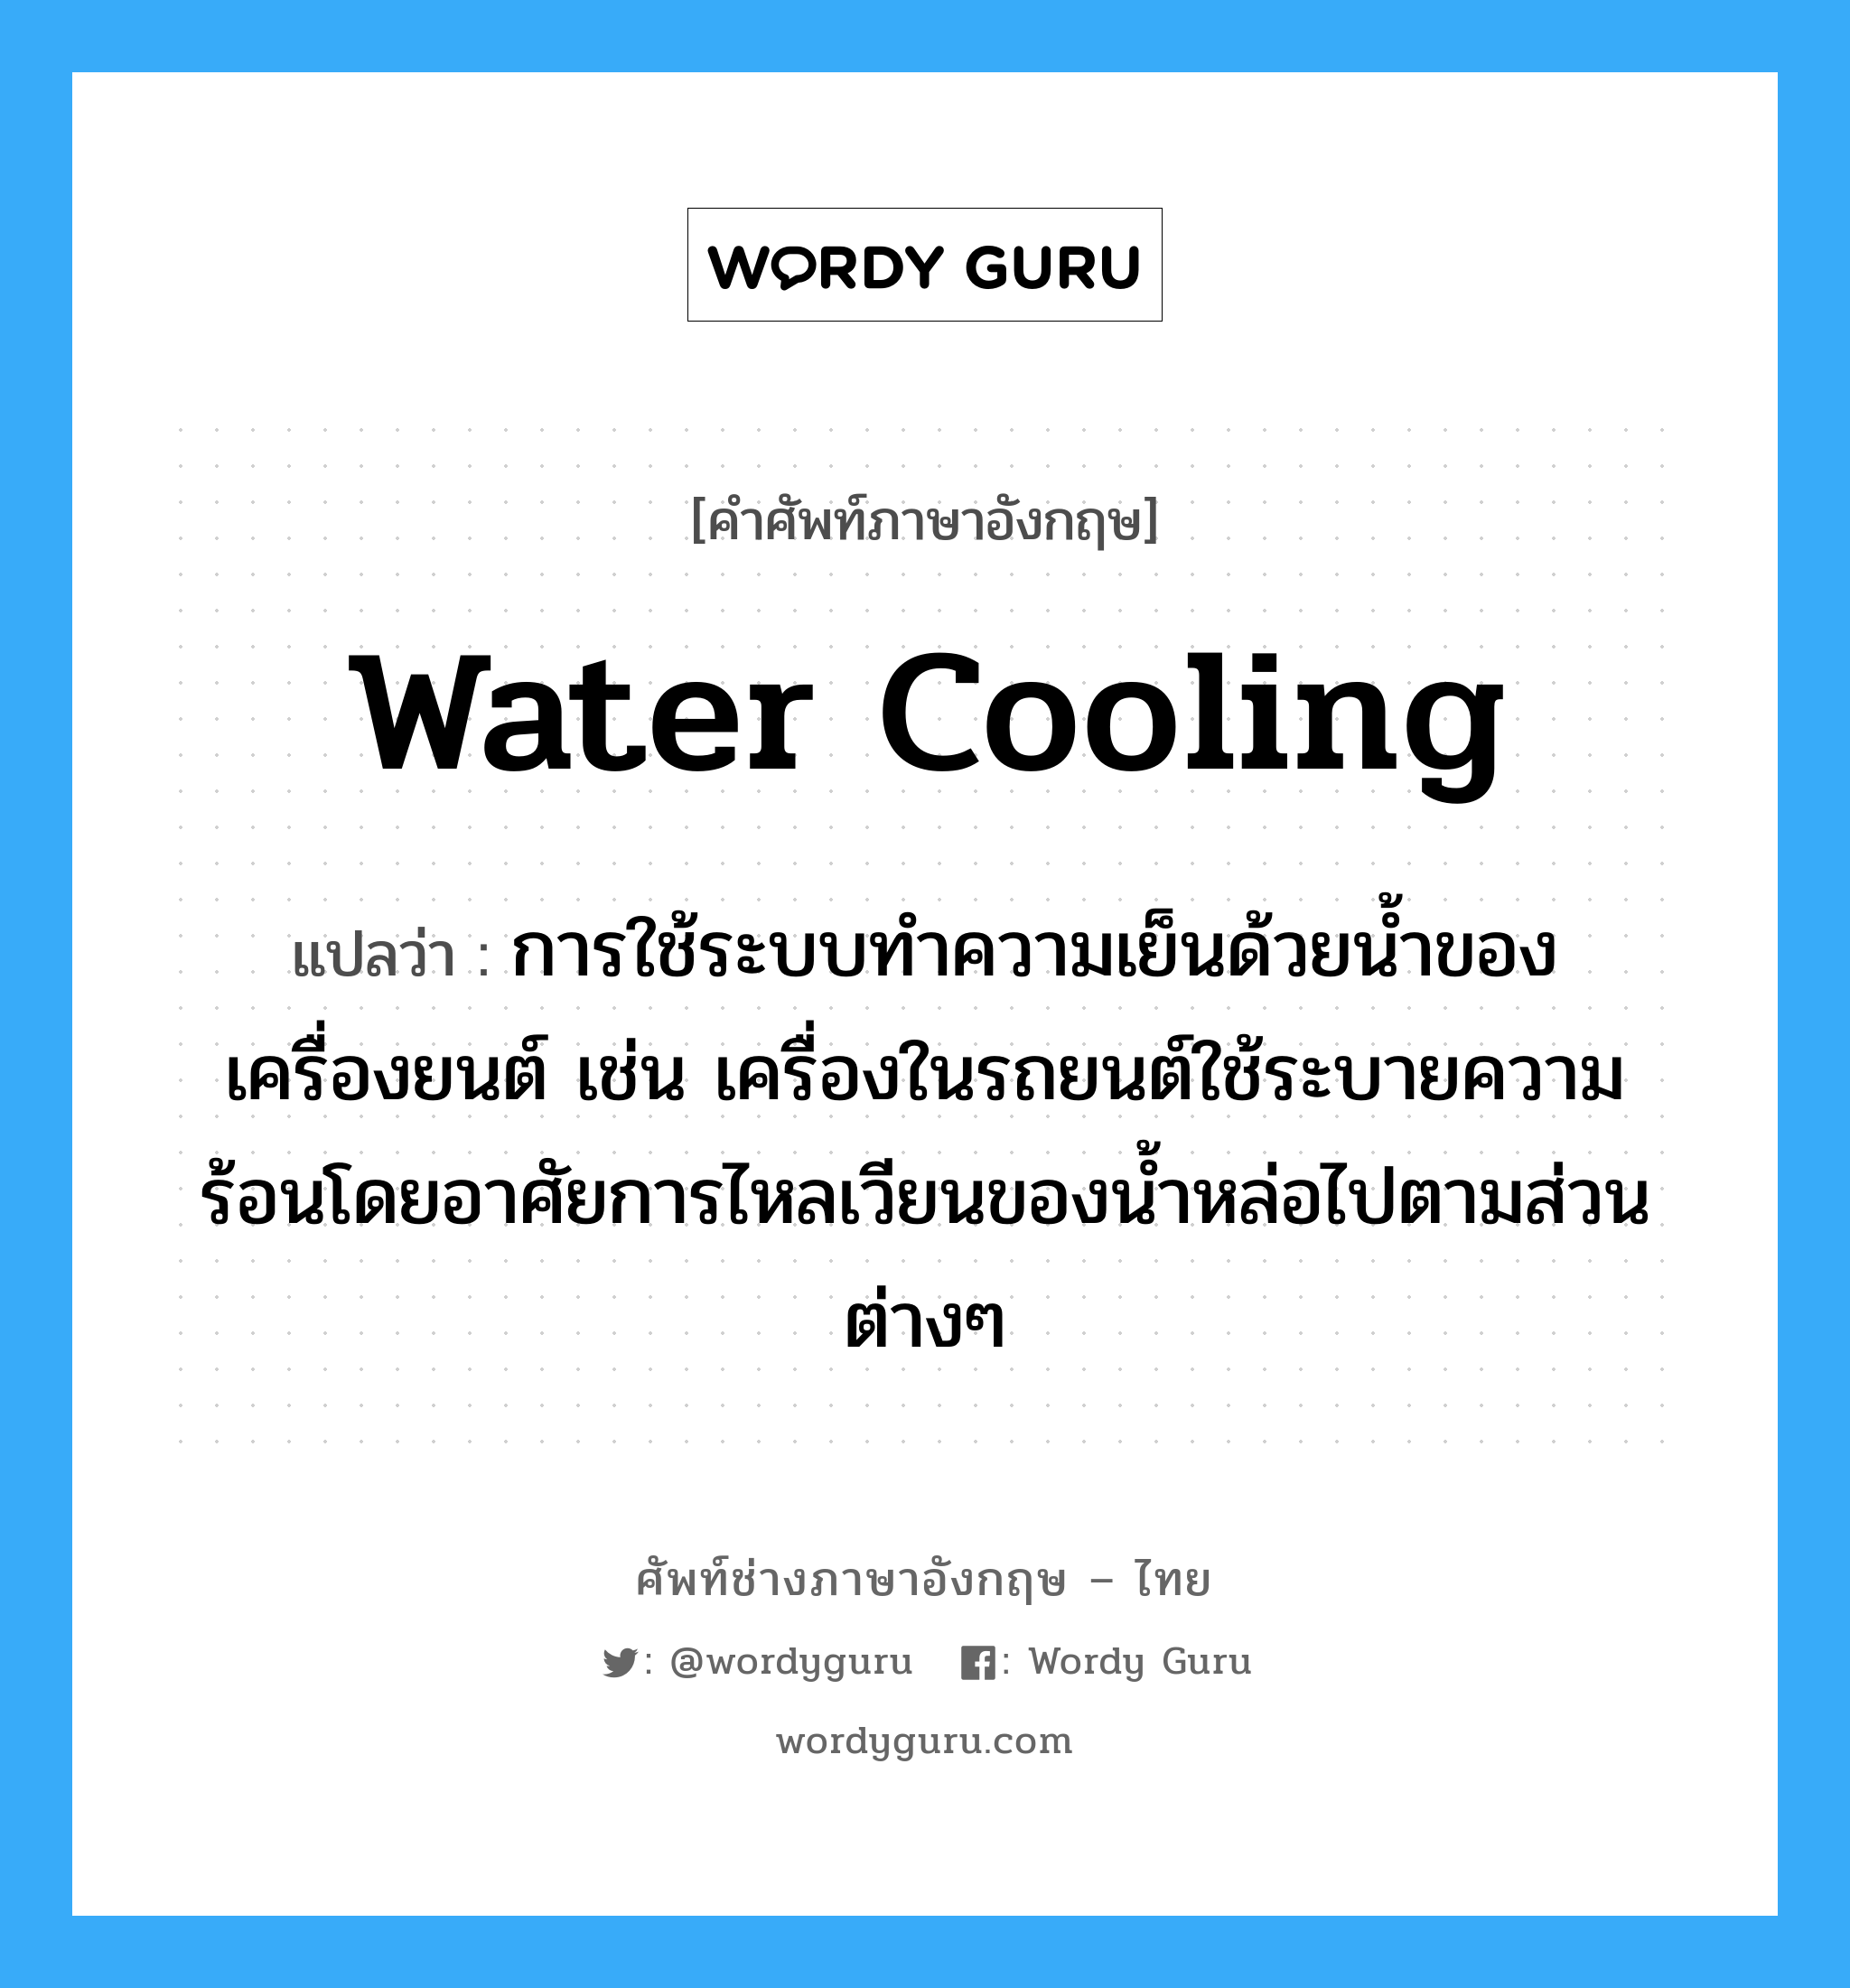 water cooling แปลว่า?, คำศัพท์ช่างภาษาอังกฤษ - ไทย water cooling คำศัพท์ภาษาอังกฤษ water cooling แปลว่า การใช้ระบบทำความเย็นด้วยน้ำของเครื่องยนต์ เช่น เครื่องในรถยนต์ใช้ระบายความร้อนโดยอาศัยการไหลเวียนของน้ำหล่อไปตามส่วนต่างๆ